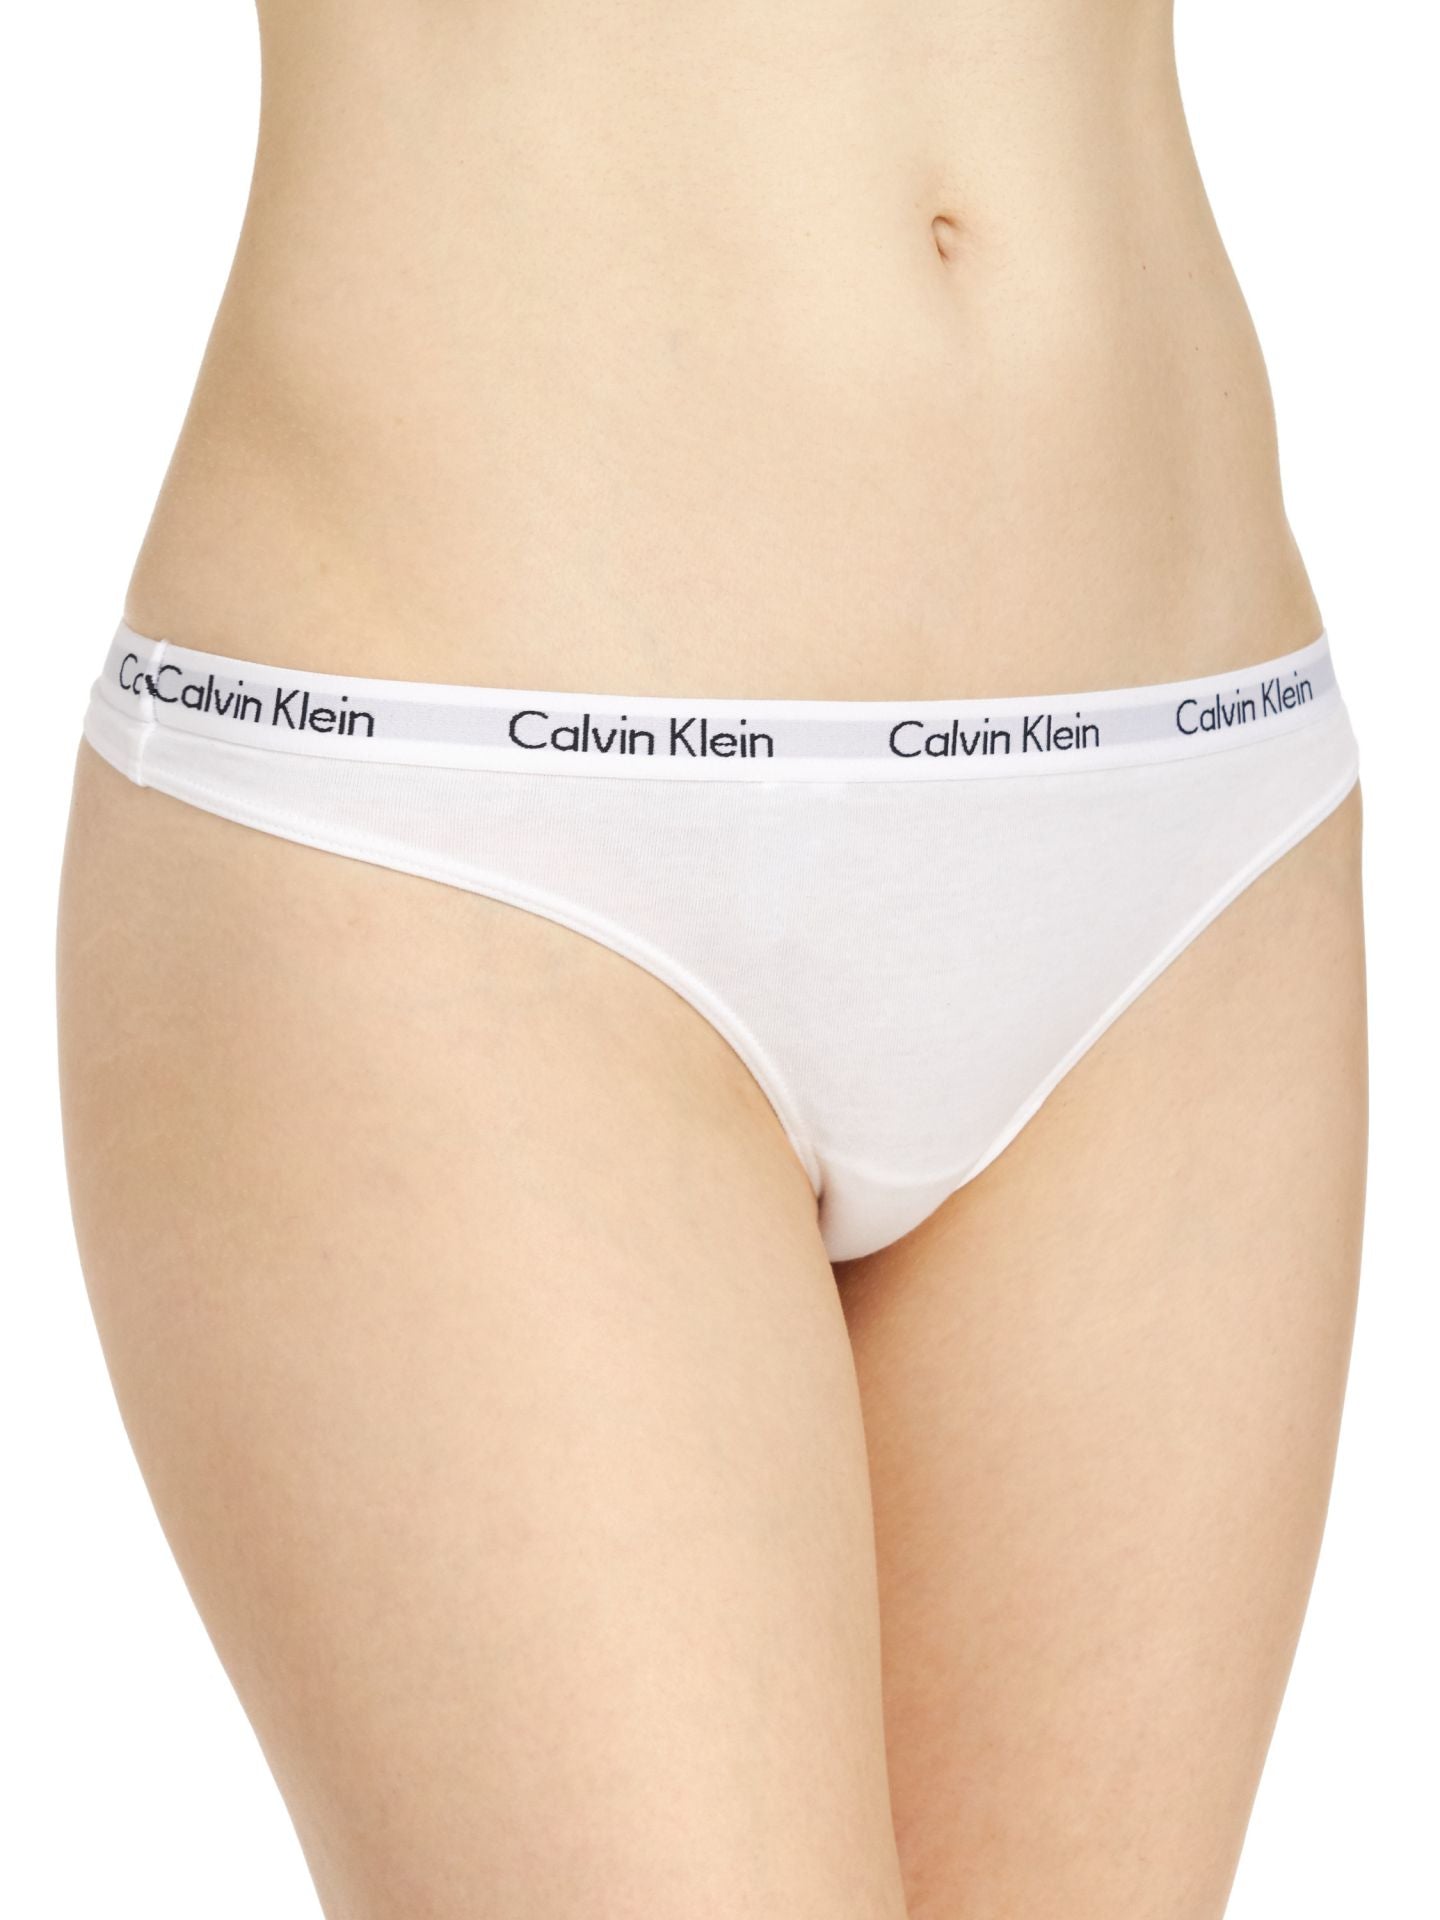 Calvin Klein Women's Carousel Thong - 3 Pack, Black/Grey/White, Large 